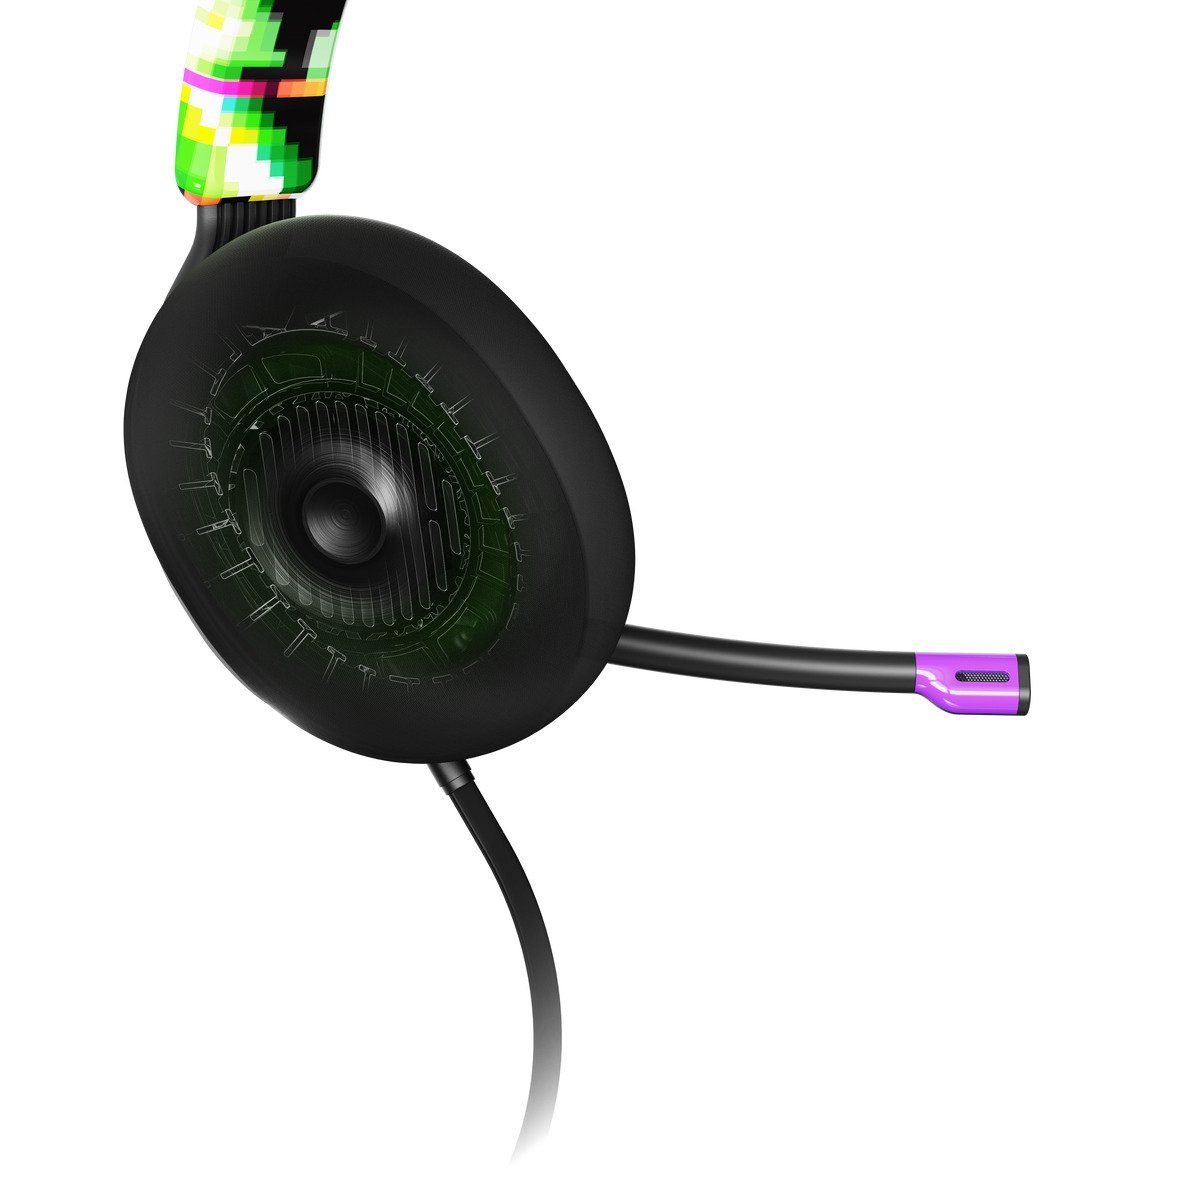 Digi-Hype Gaming 2,4 Button, /PC Multi-Plattform Wired Mute 3.5mm Sound, Lautstärken-Anpassungen, Gaming-Headset einfache Xbox Ghz) Black Lautsträken-Rad Splitter, SLYR Konnektivität (Skullcandy Skullcandy für Headband, Over-Ear Supreme Gepolstertes